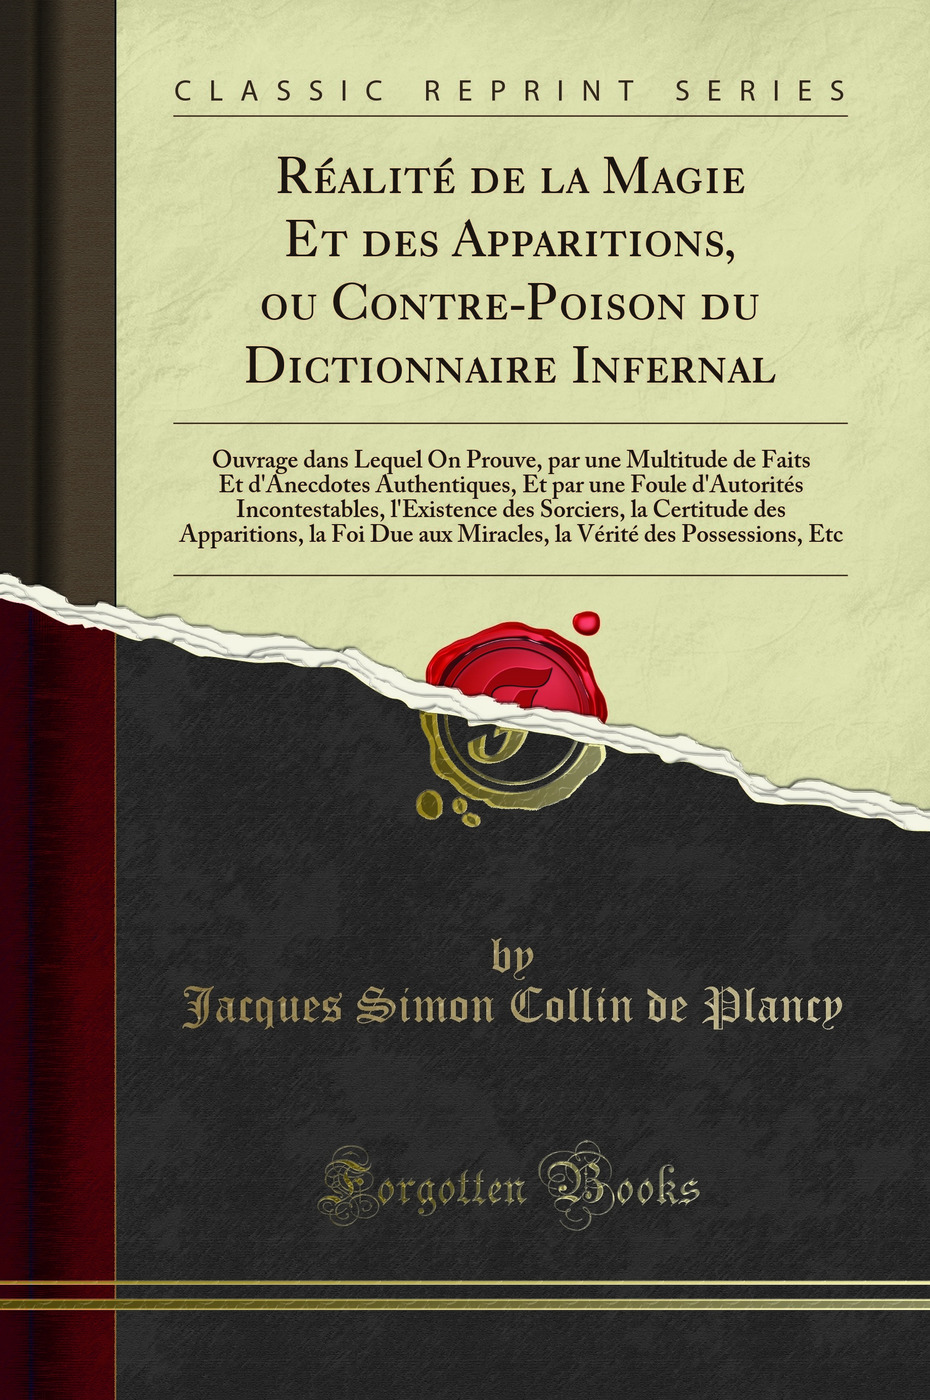 RÃ alitÃ de la Magie Et des Apparitions, ou Contre-Poison du Dictionnaire - Jacques Simon Collin de Plancy